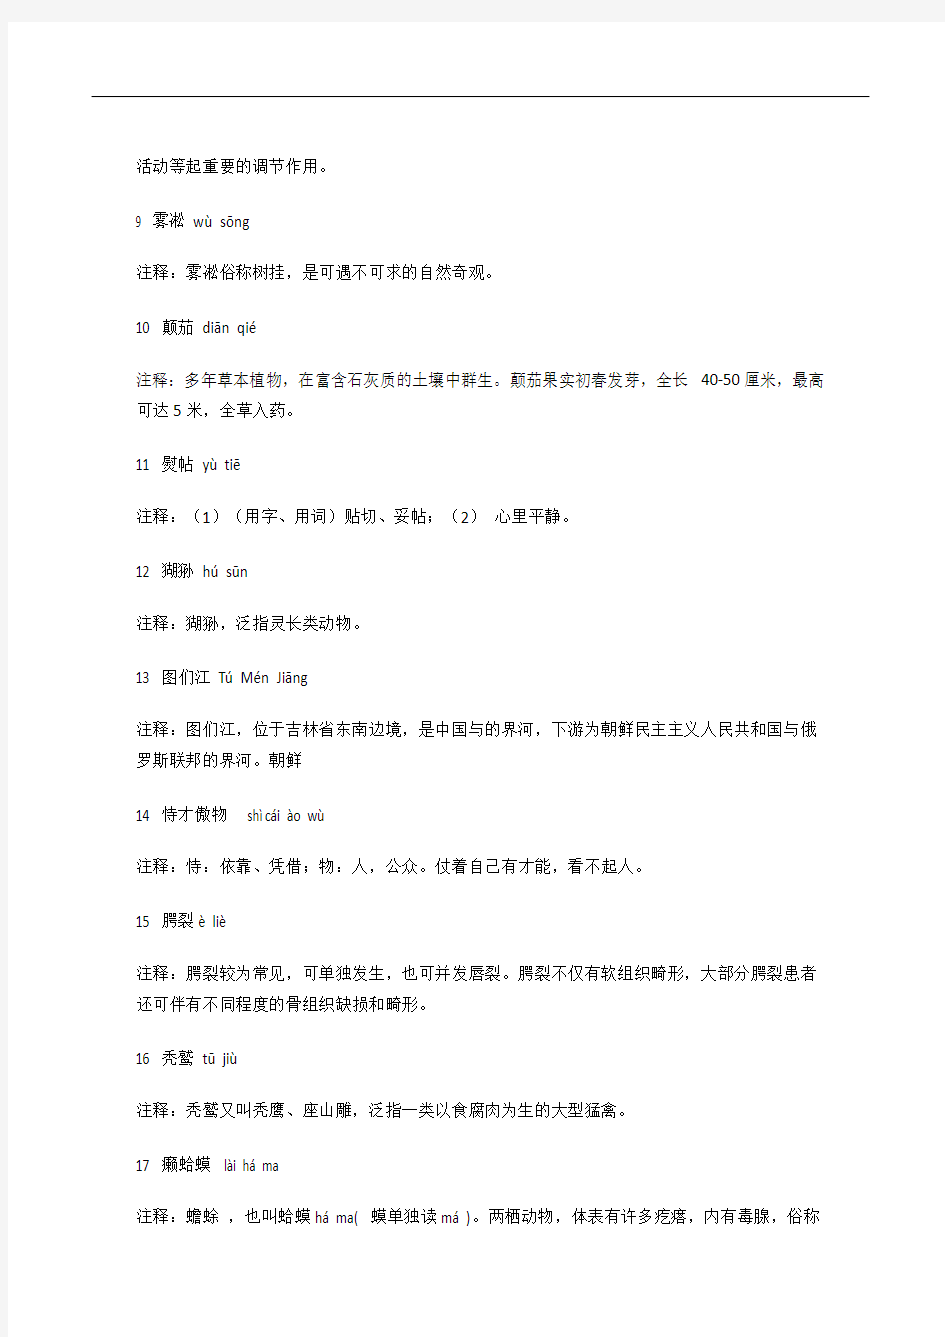 中国汉字听写大赛试题(含解释)分析